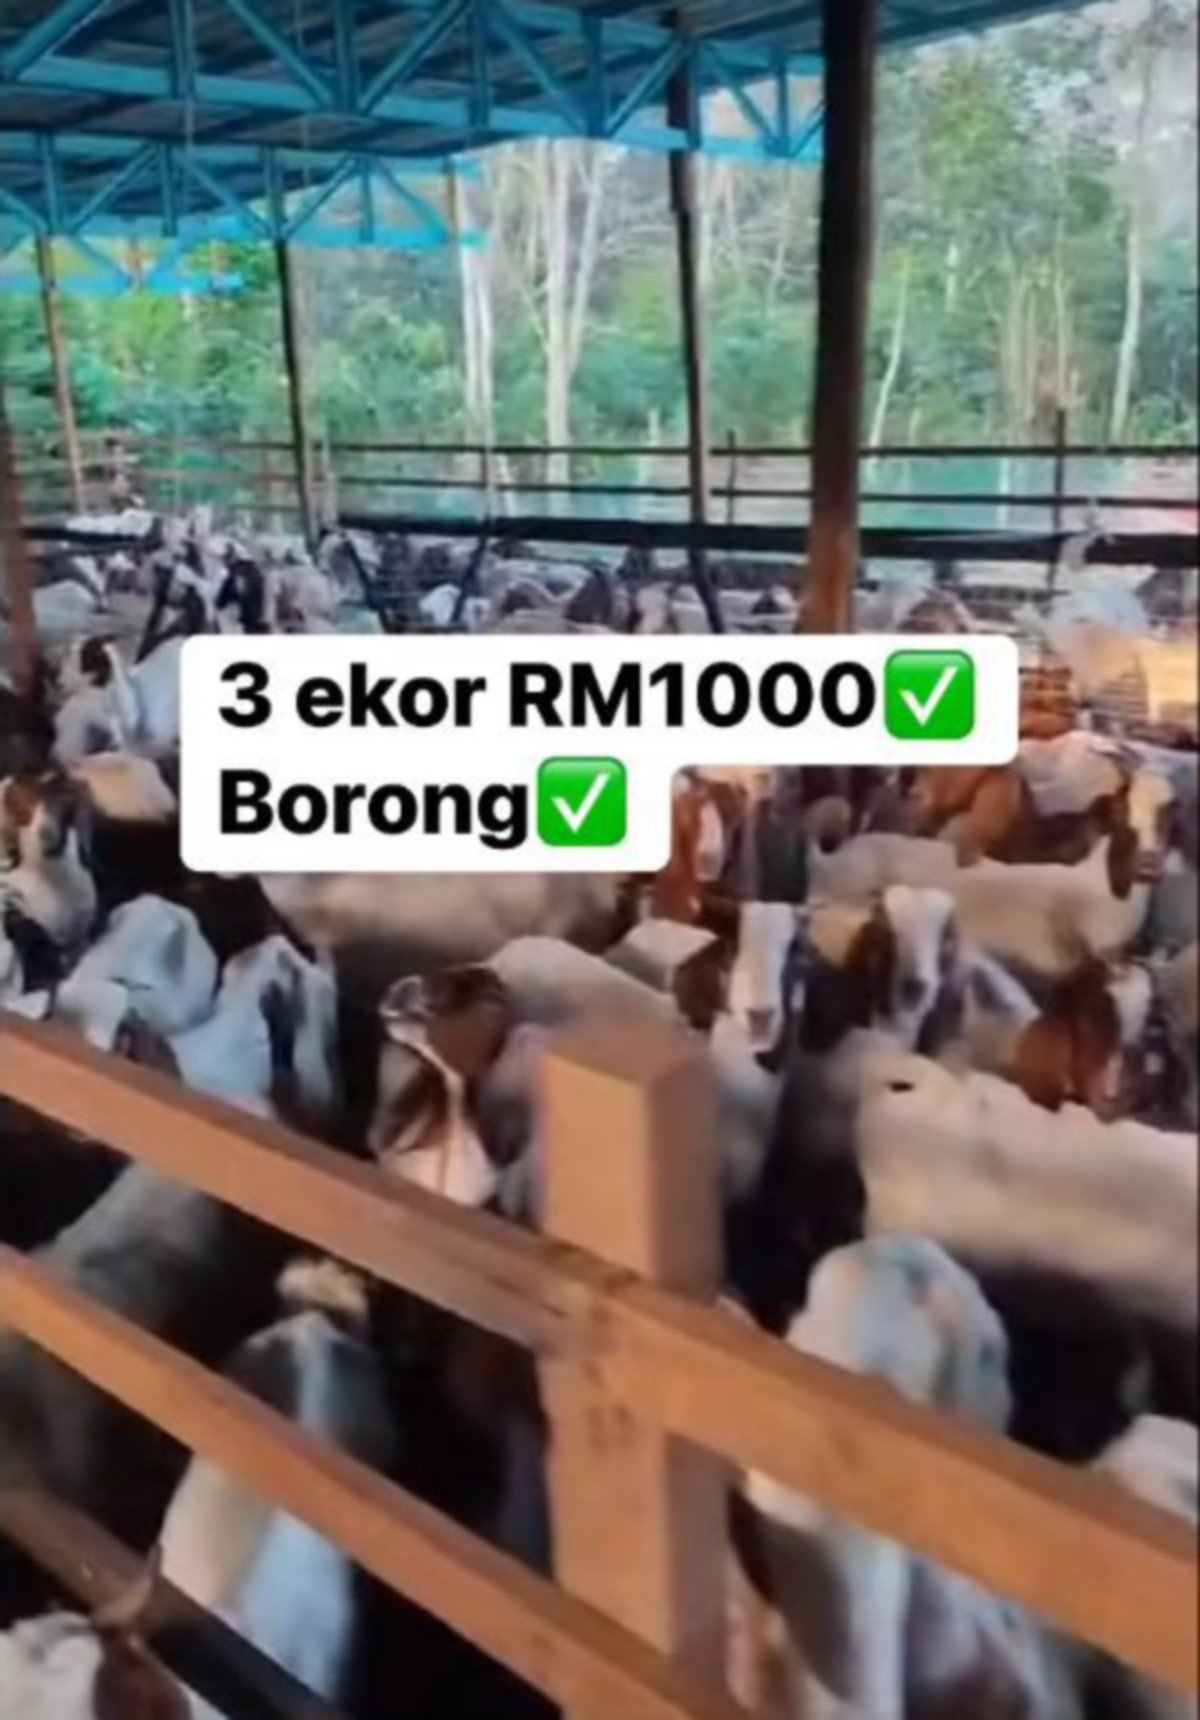 TULAR di media sosial penternak menjual kambing pada harga runtuh hingga mencetuskan tanda tanya ramai.